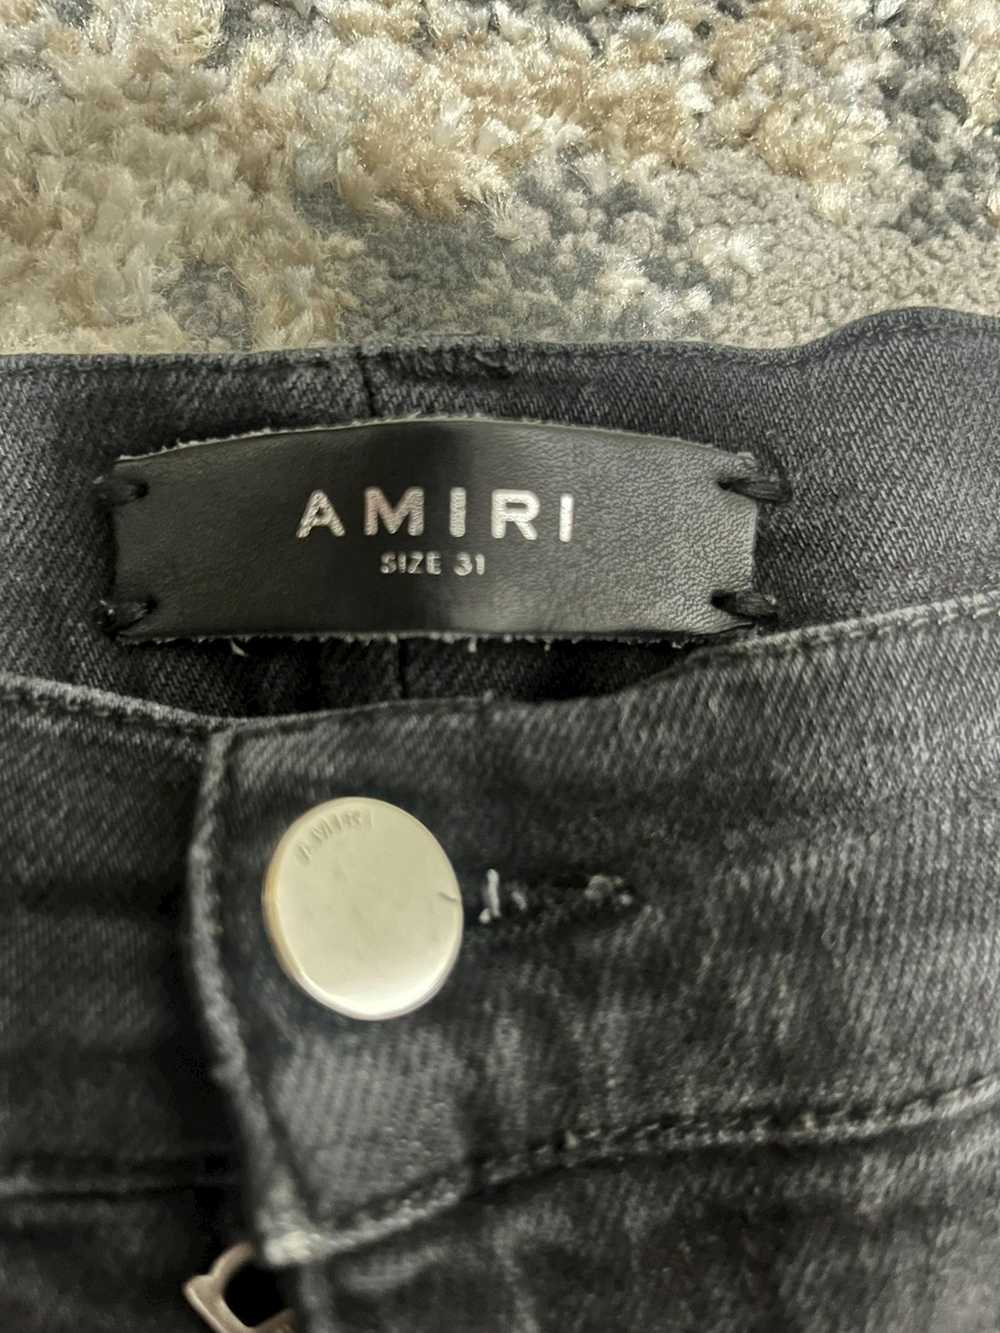 Amiri Amiri jeans - image 4